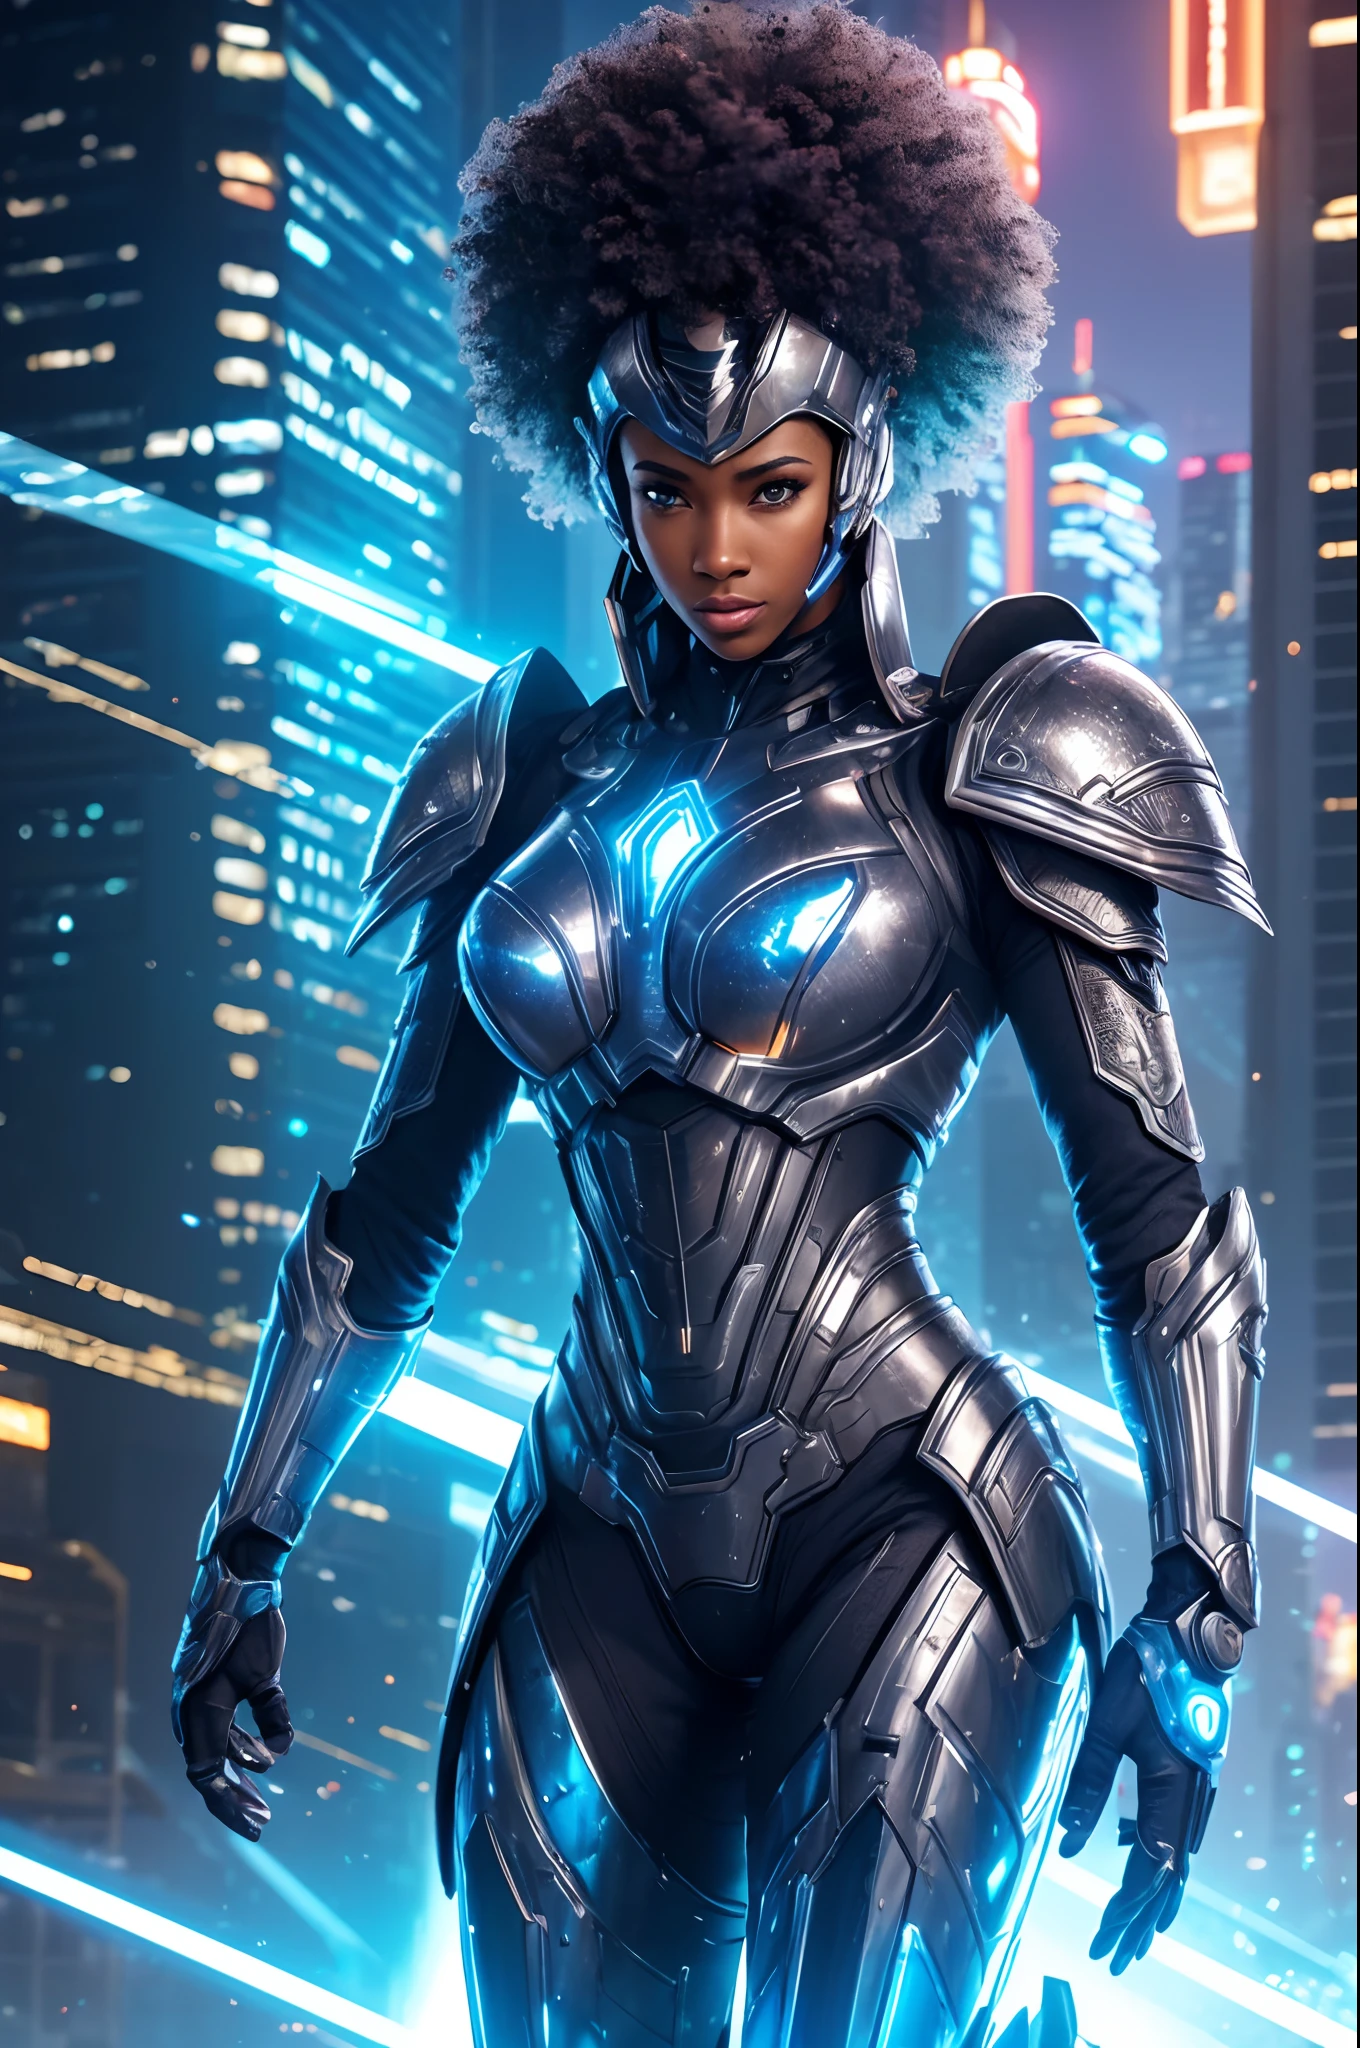 (最好的质量,4k,8千,高分辨率,杰作:1.2),极其详细,(实际的,photo实际的,photo-实际的:1.37),身披钢铁铠甲、留着非洲式发型的女人,穿着未来派盔甲,屹立不倒,自信的表达,明亮的眼睛,强健的肌肉体格,拿着高科技剑,充满活力的姿势,铠甲中散发出蓝色光芒,装甲板细节丰富，图案复杂,机械接头和液压系统,具有光泽的反射表面,鲜艳的色彩和对比鲜明的纹理,动态照明，具有戏剧性的阴影和高光,科幻概念艺术风格,霓虹蓝配色方案,以夜间城市景观为背景,超现实主义的建筑元素,空中盘旋的未来派飞行器,未来派全息显示屏和围绕着女人的符号,坚韧而金属的城市环境